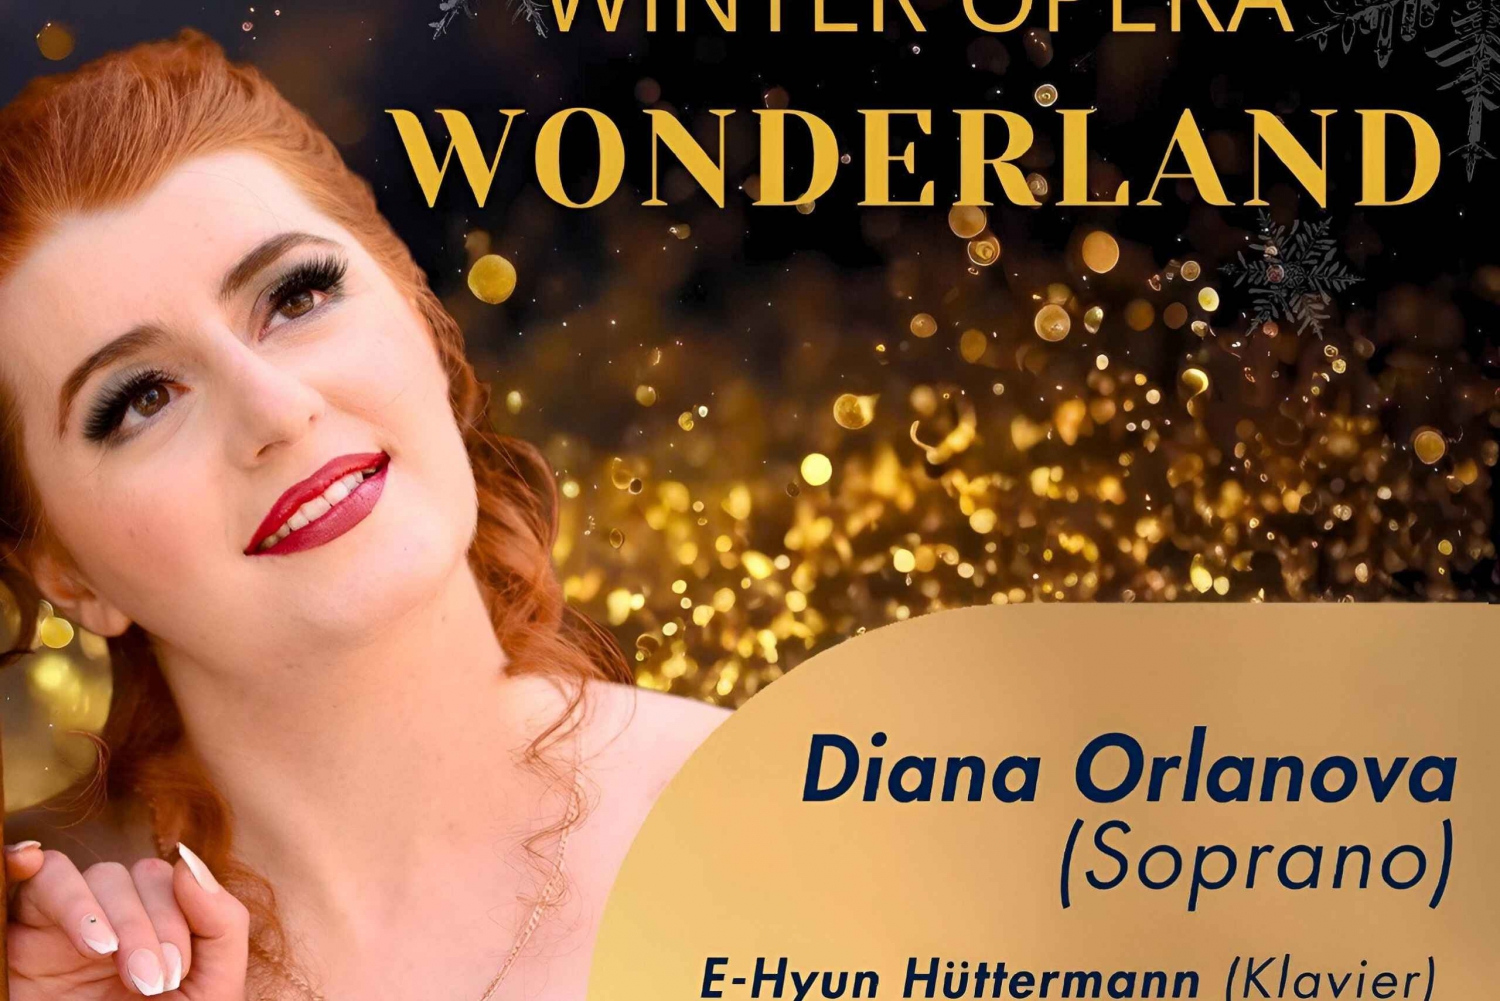 Opéra d'hiver au pays des merveilles : Concert thématique d'opéra à Vienne